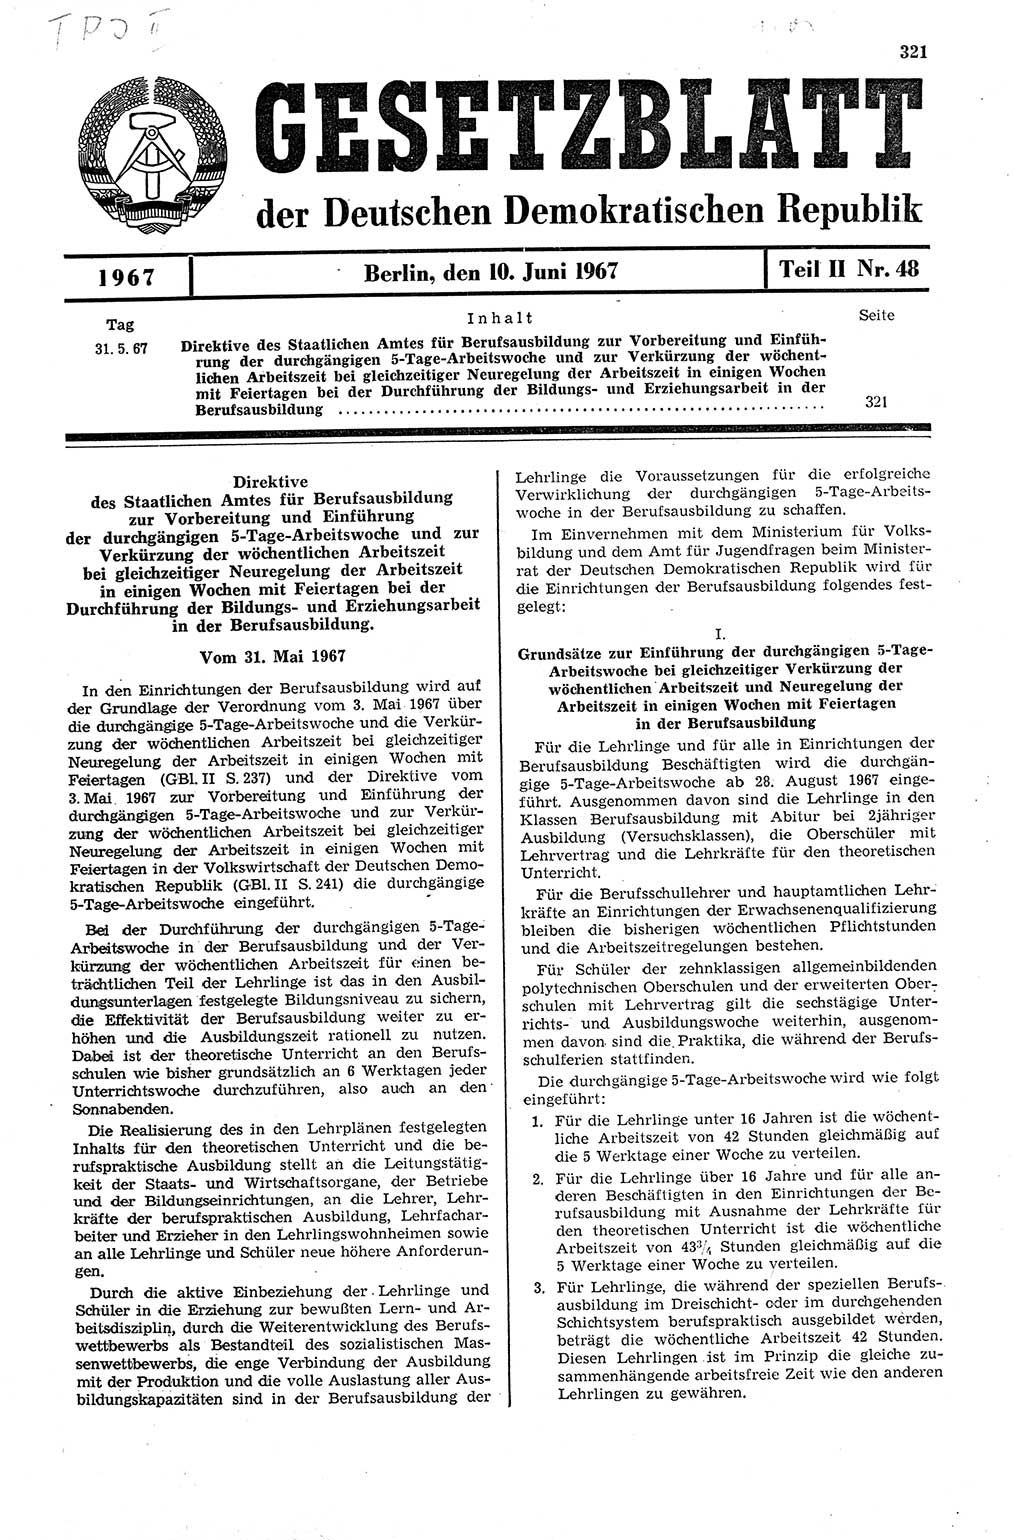 Gesetzblatt (GBl.) der Deutschen Demokratischen Republik (DDR) Teil ⅠⅠ 1967, Seite 321 (GBl. DDR ⅠⅠ 1967, S. 321)